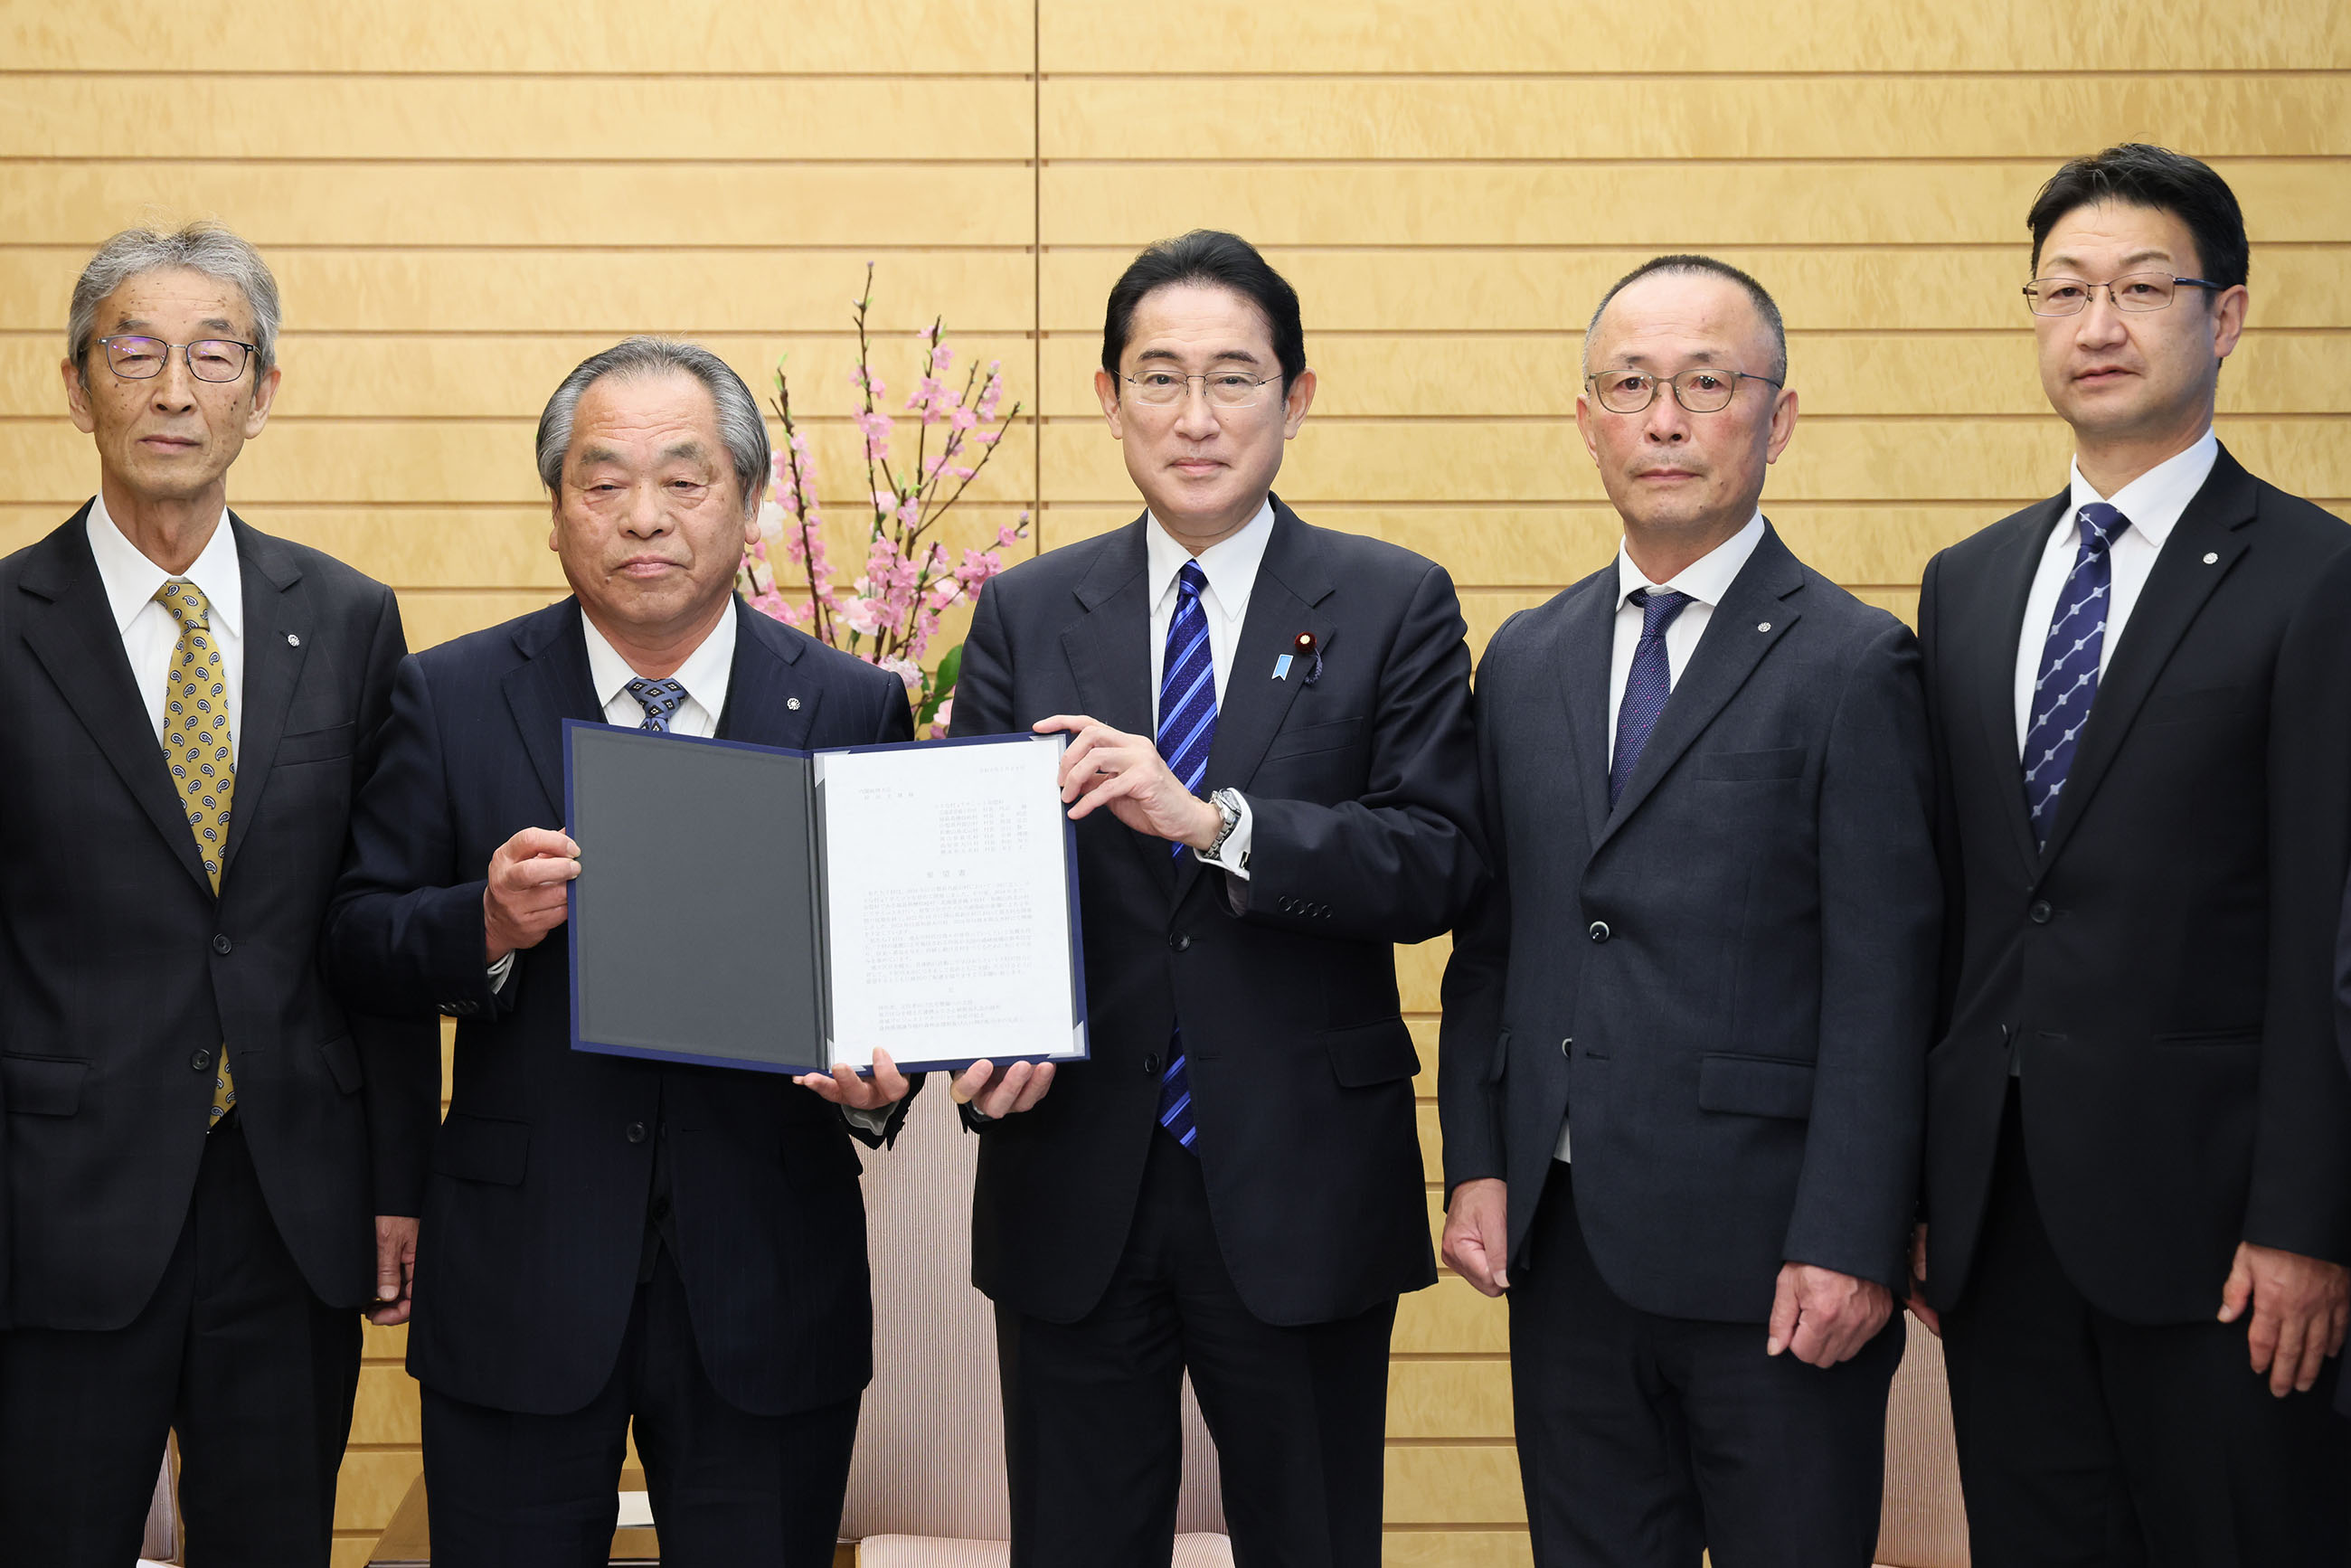 Prime Minister Kishida holding a meeting (2)